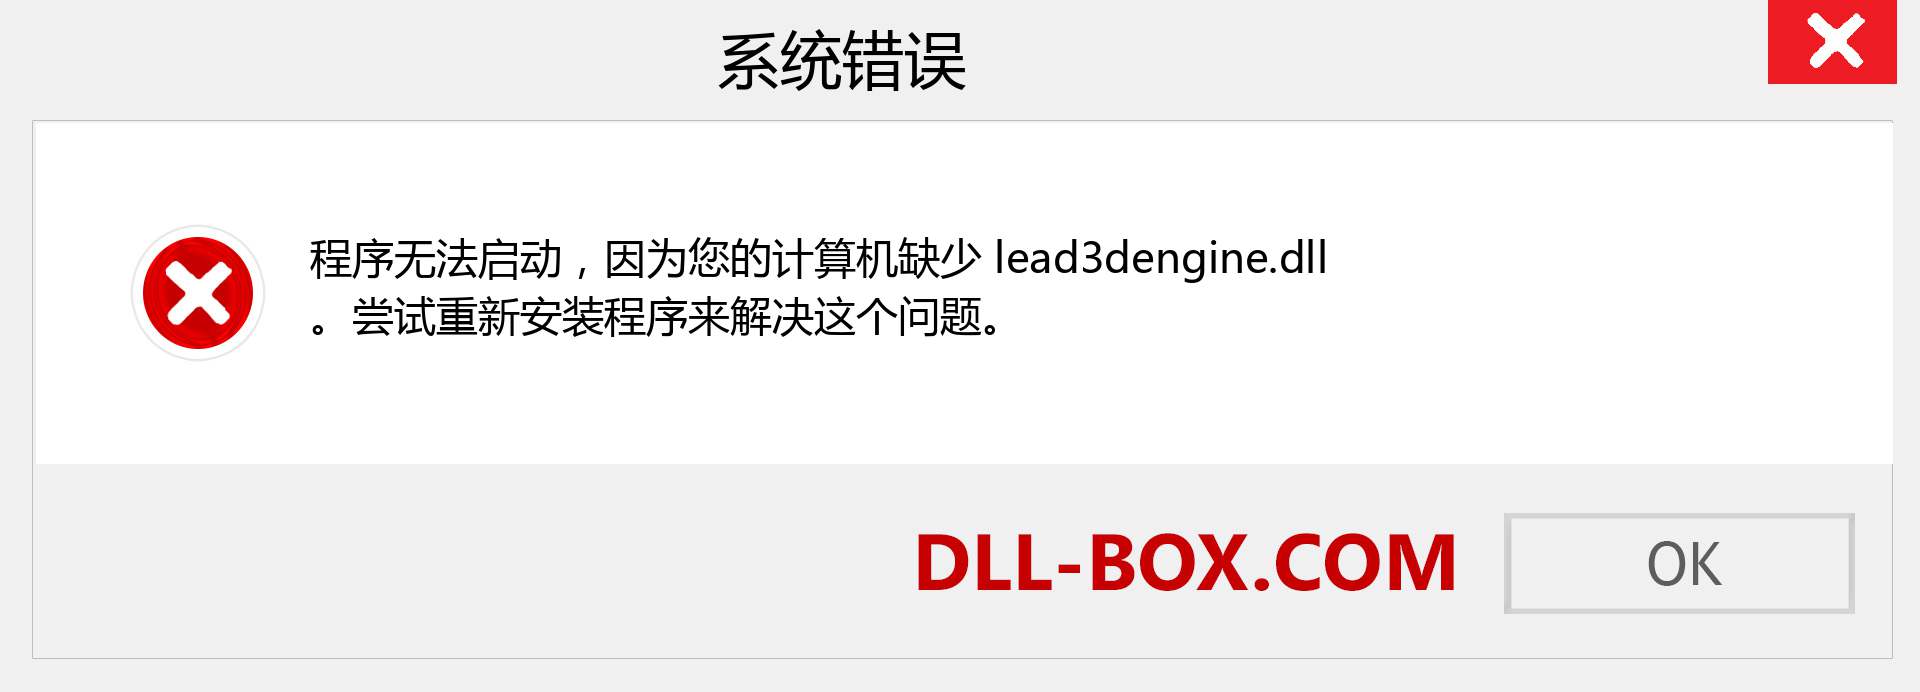 lead3dengine.dll 文件丢失？。 适用于 Windows 7、8、10 的下载 - 修复 Windows、照片、图像上的 lead3dengine dll 丢失错误